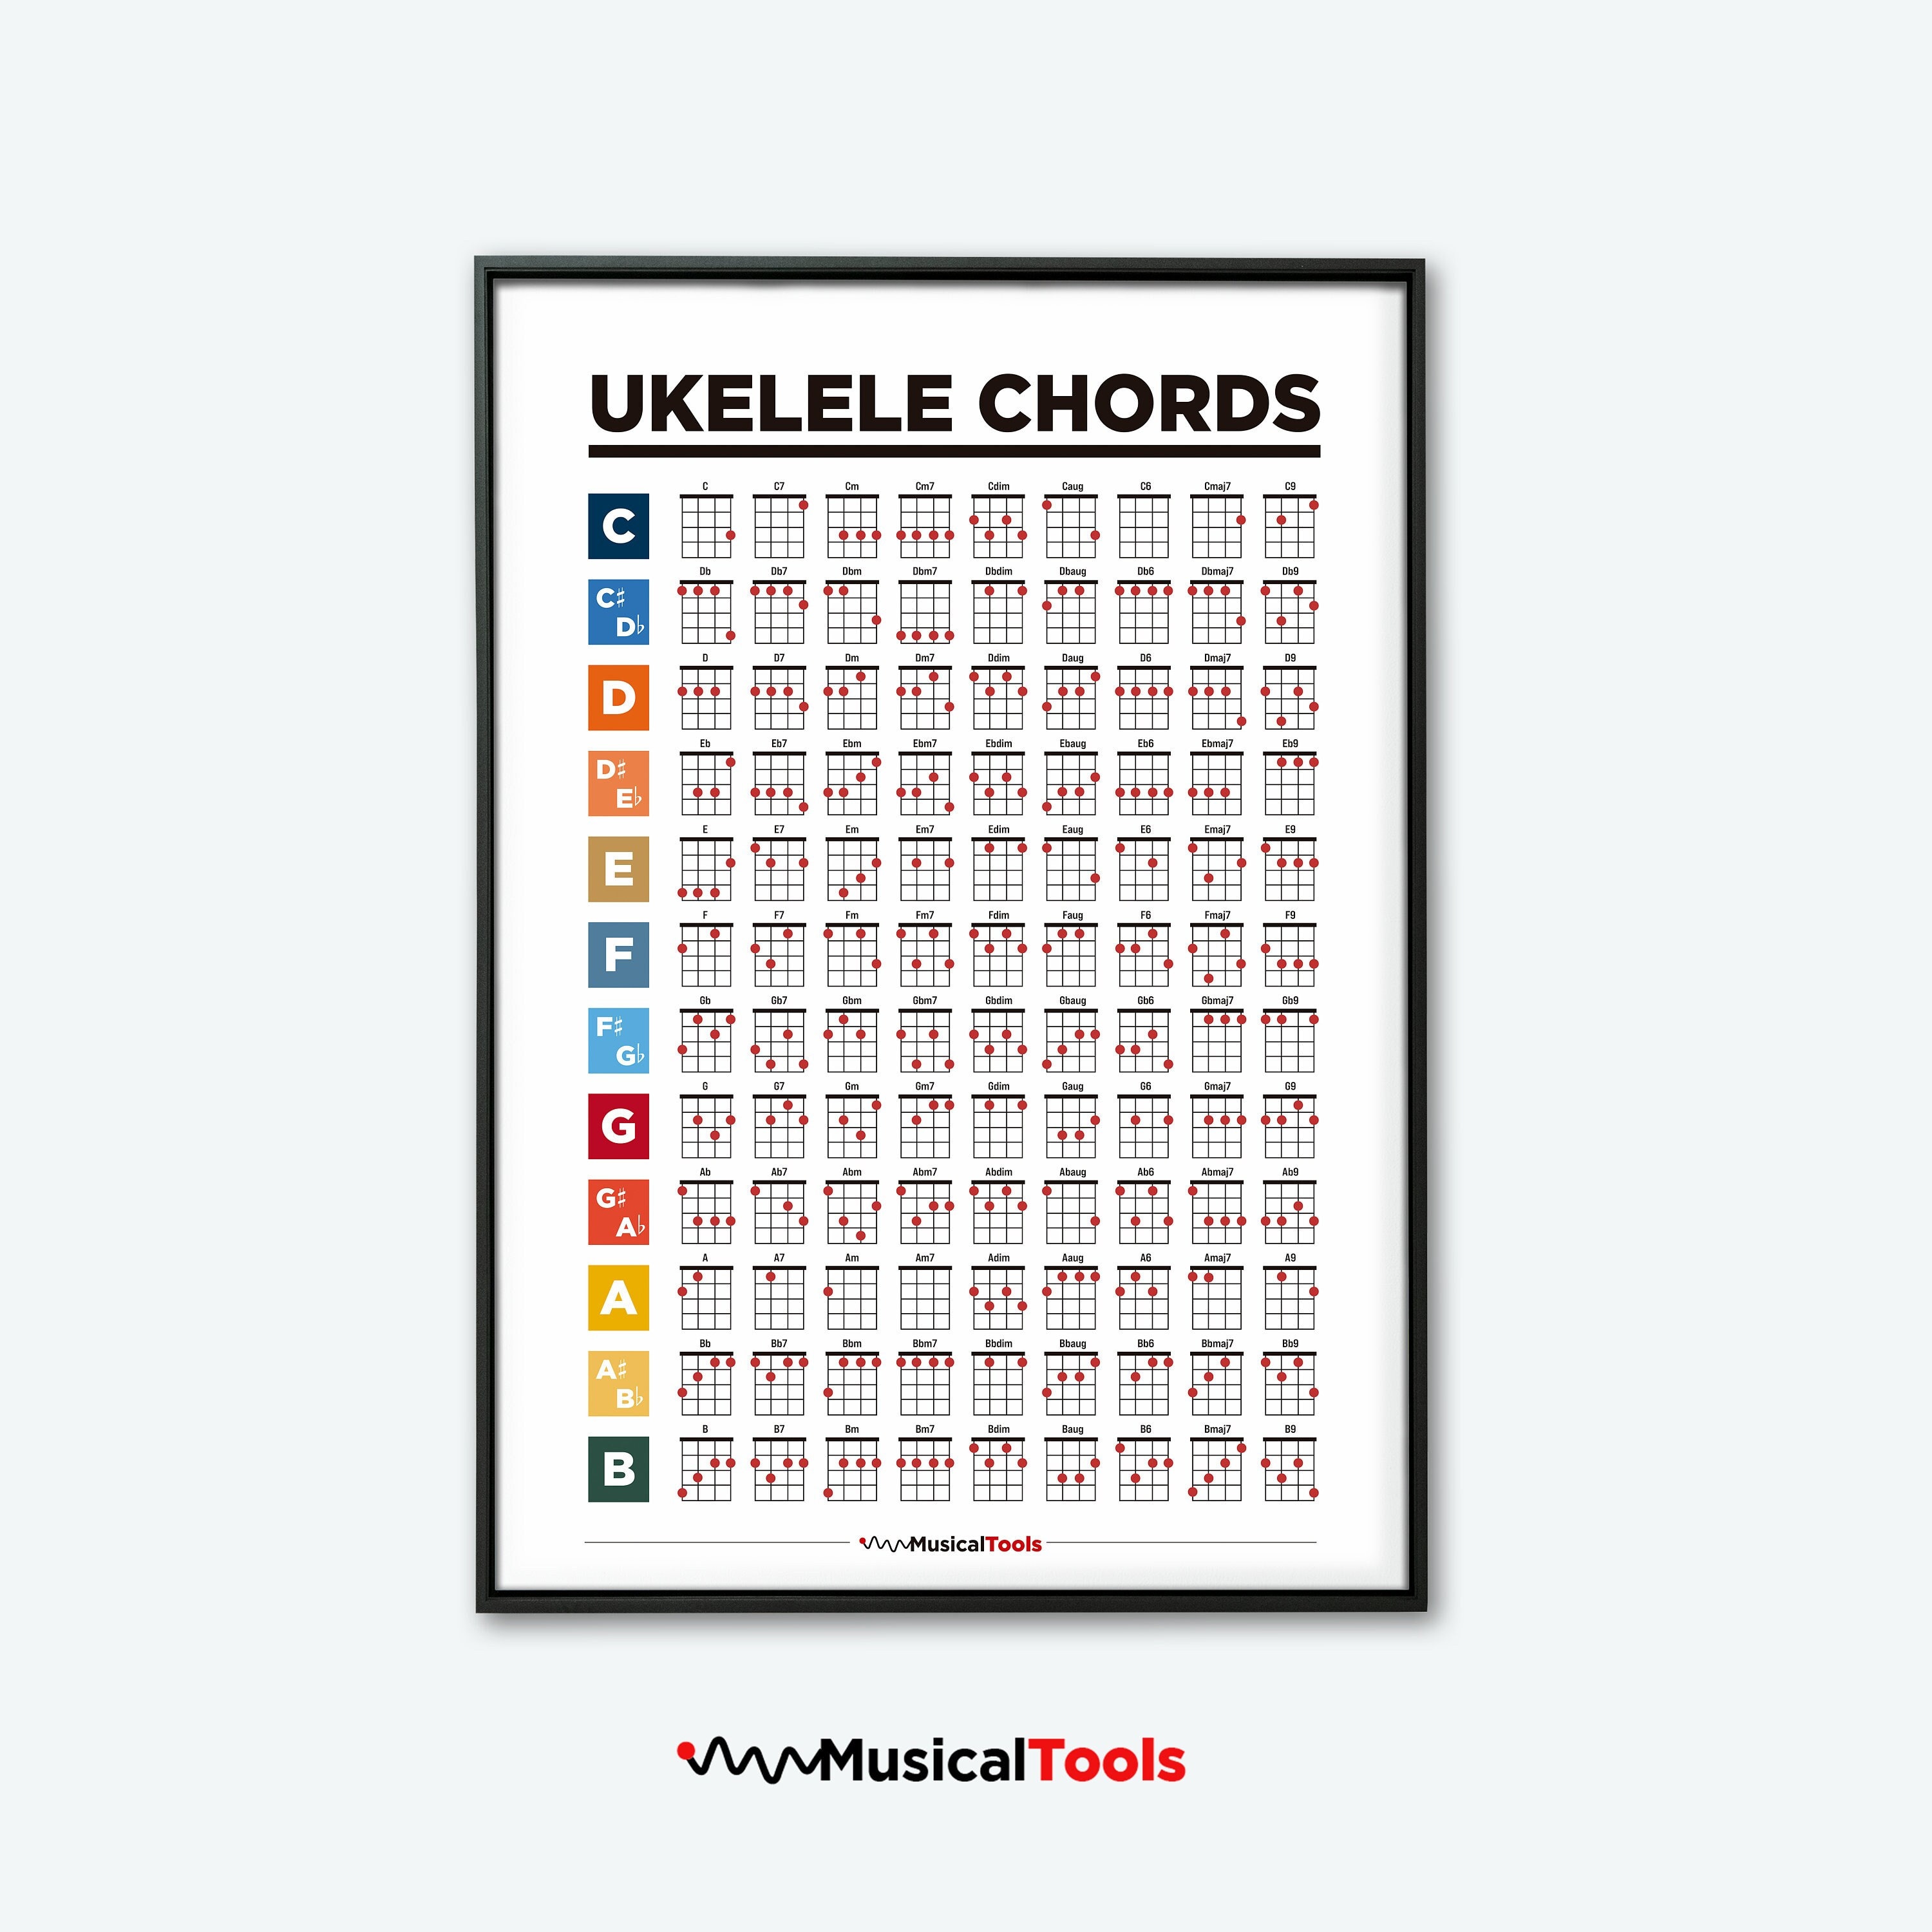 Mini Ukulele Chord Chart Laminated - Ukulele Chords Poster for Beginners  and Musicians - Beginner Ukulele Music Theory Trainer - Ukulele Accessories  